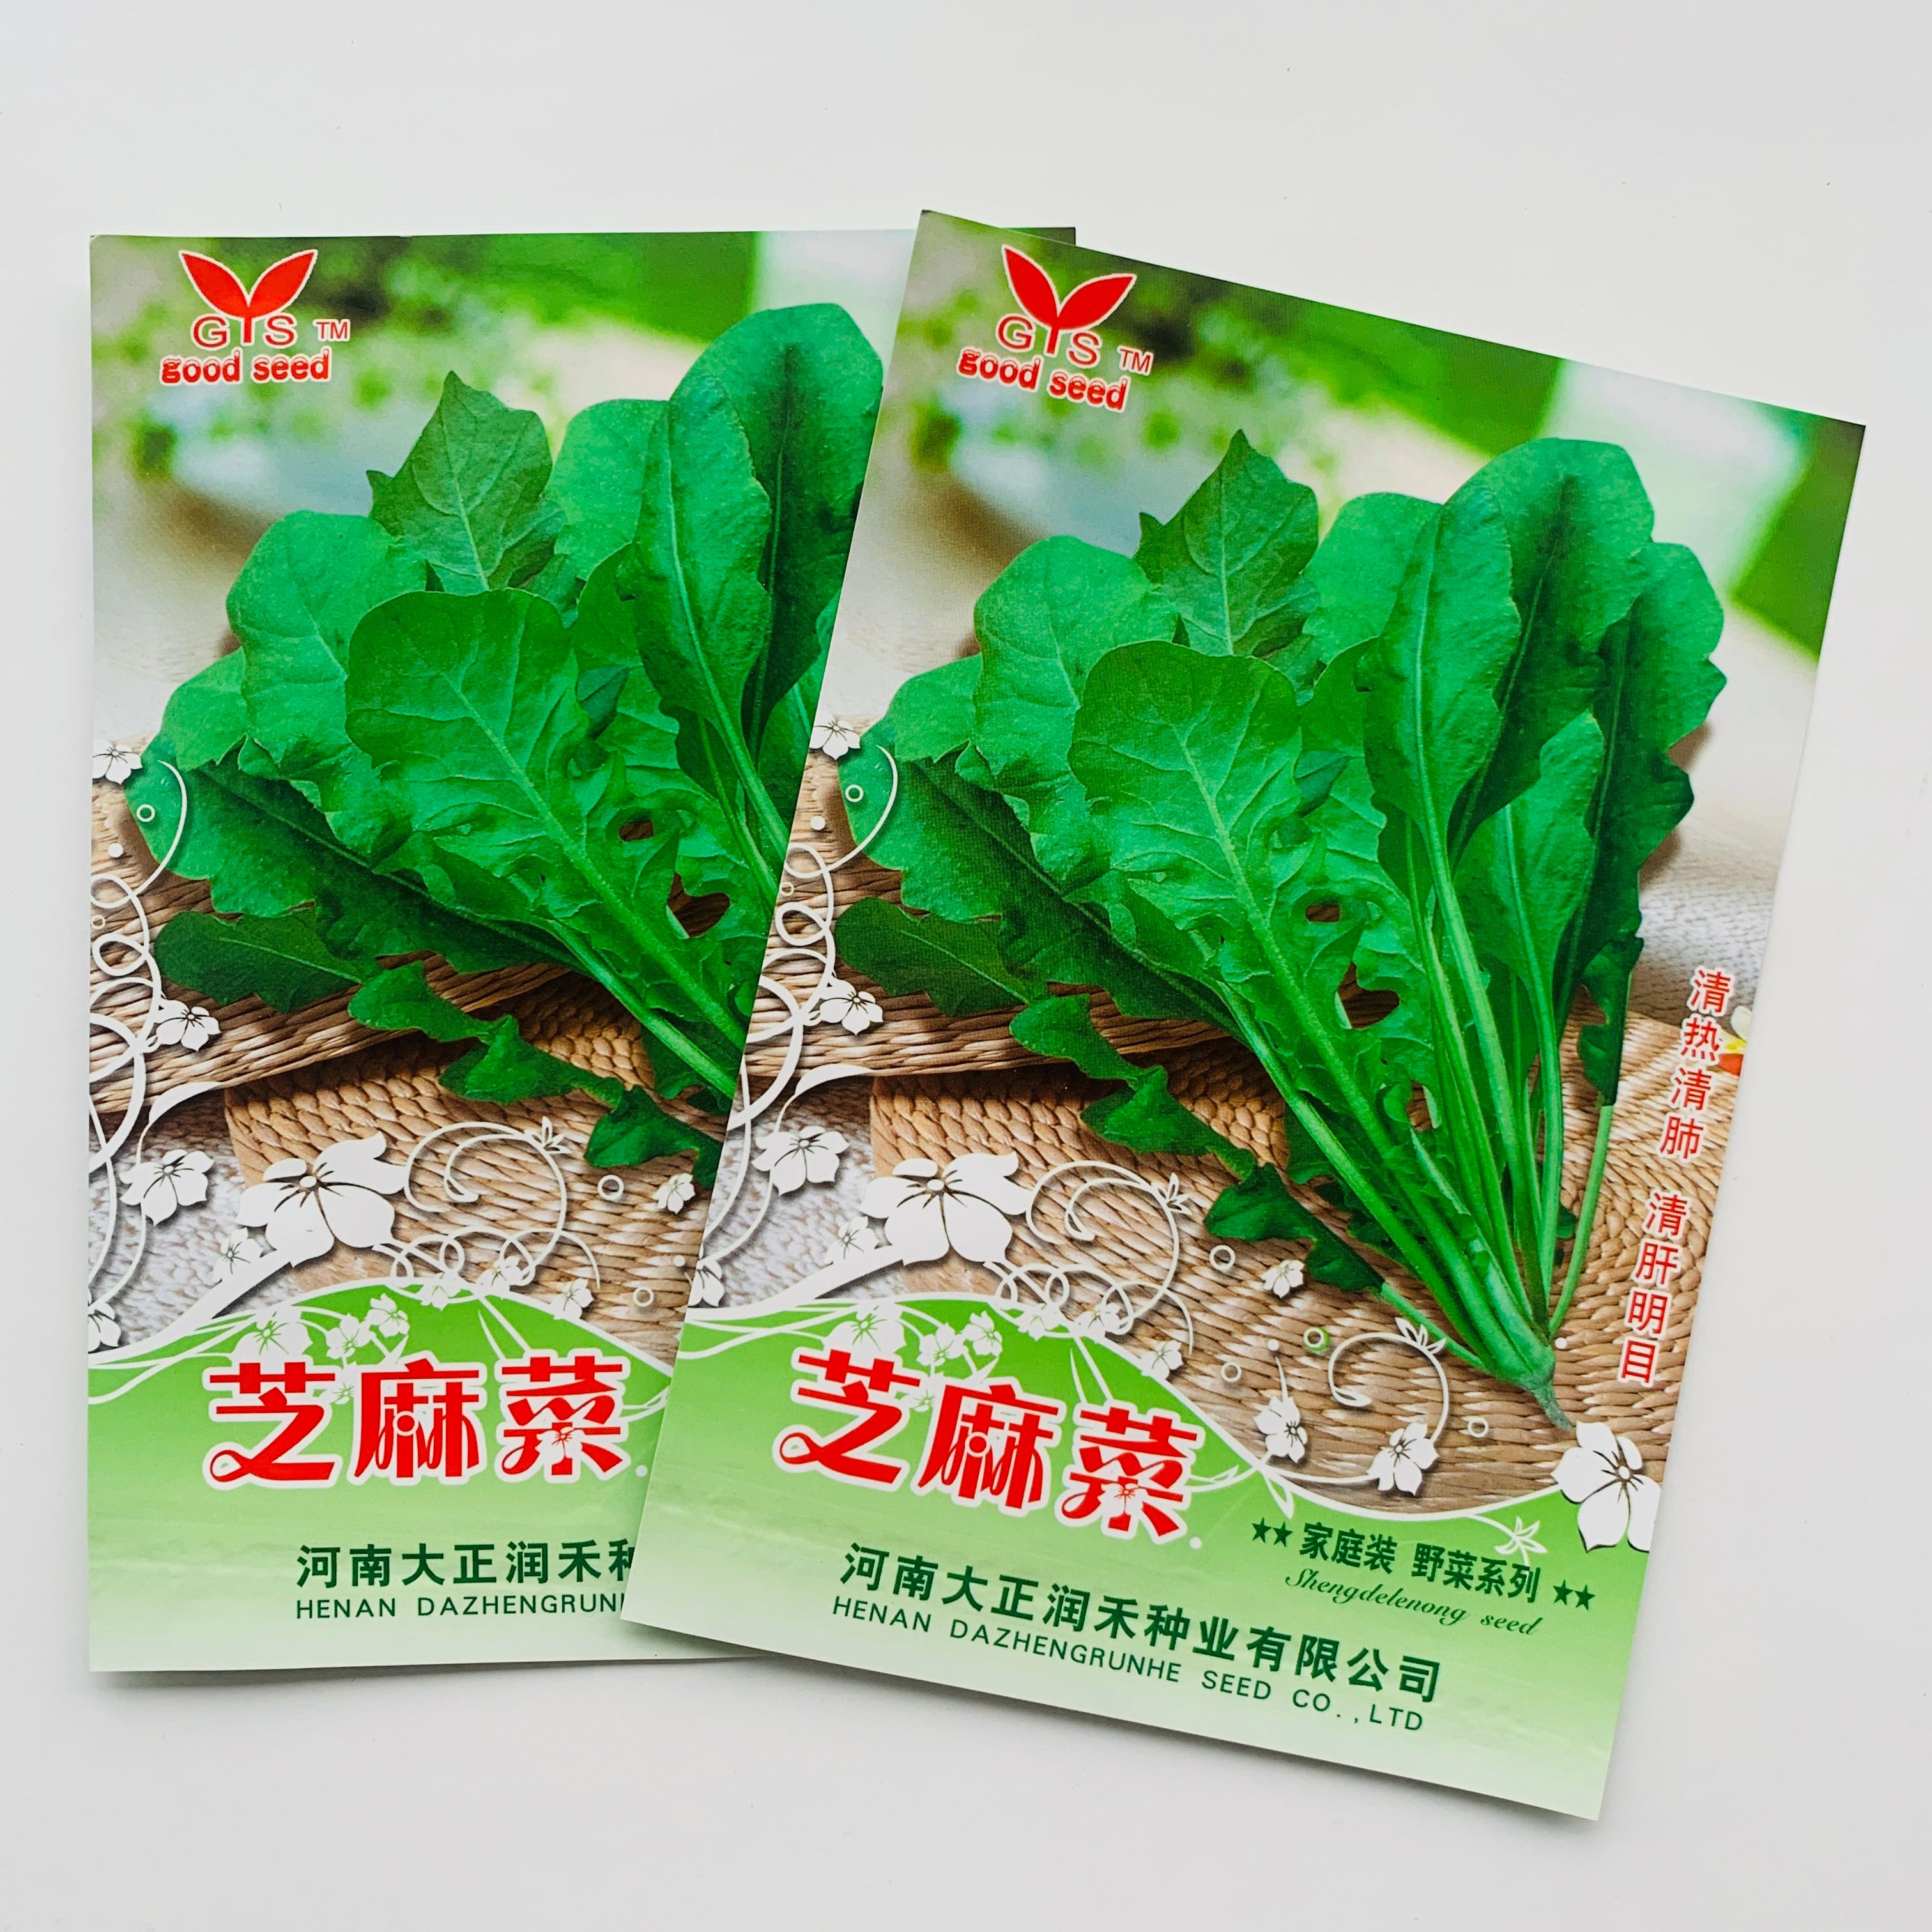 沭阳县香芝麻菜种子 农家丰产花芝麻菜种籽 庭院菜园易种 臭菜种子